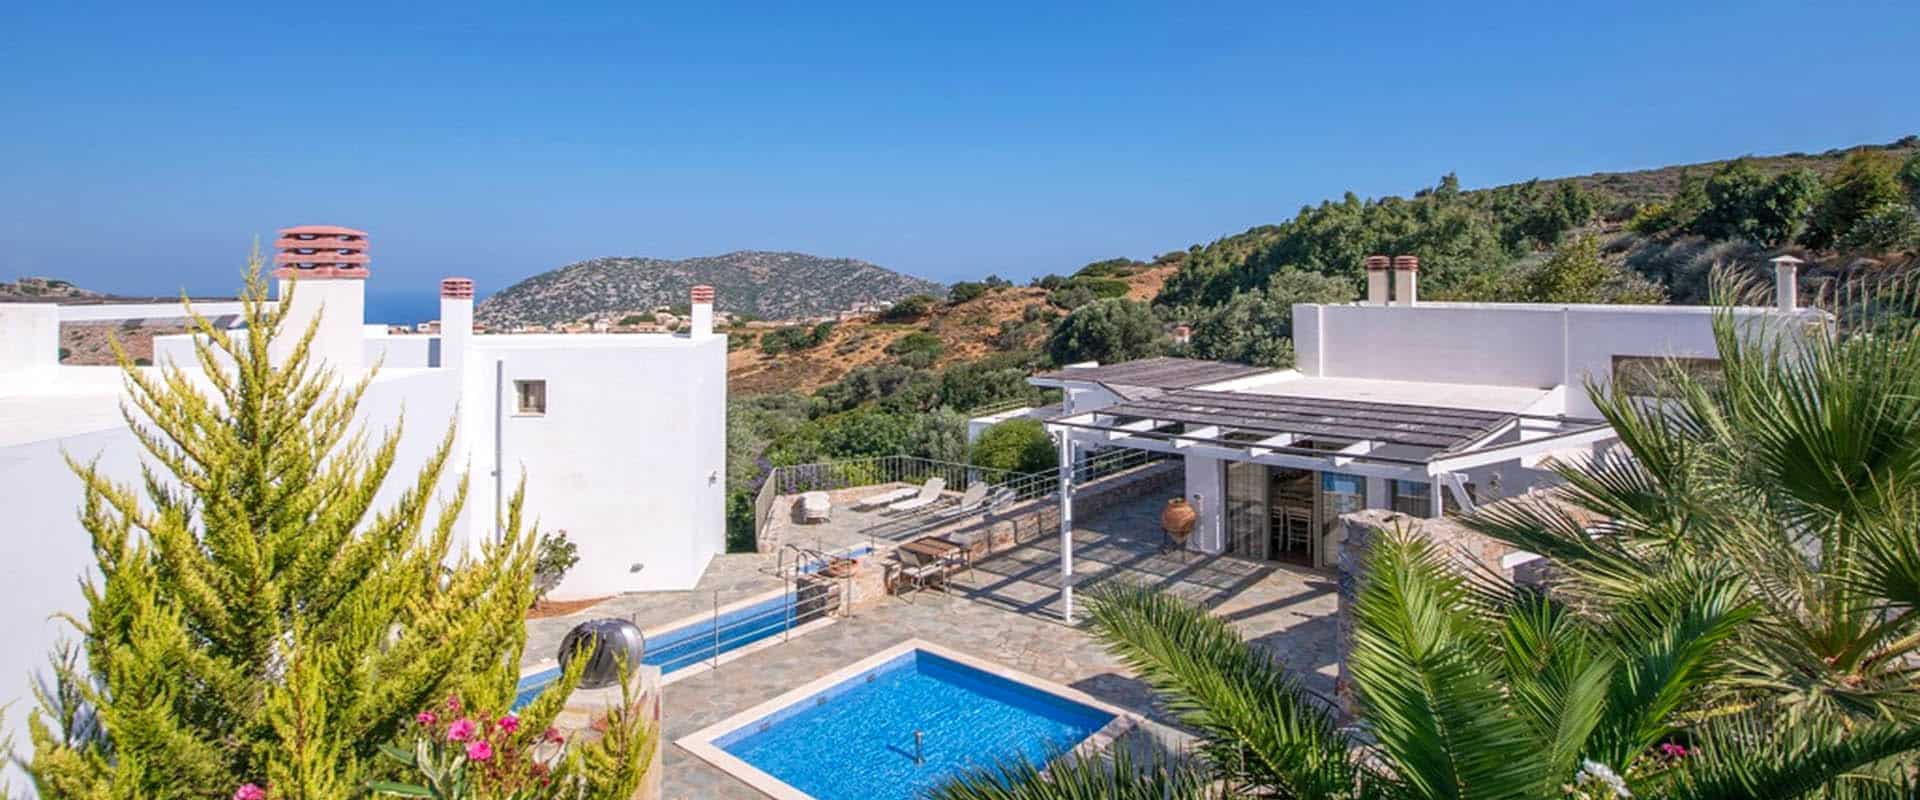 экотуризм отдых отель устойчивый туризм Крит Греция